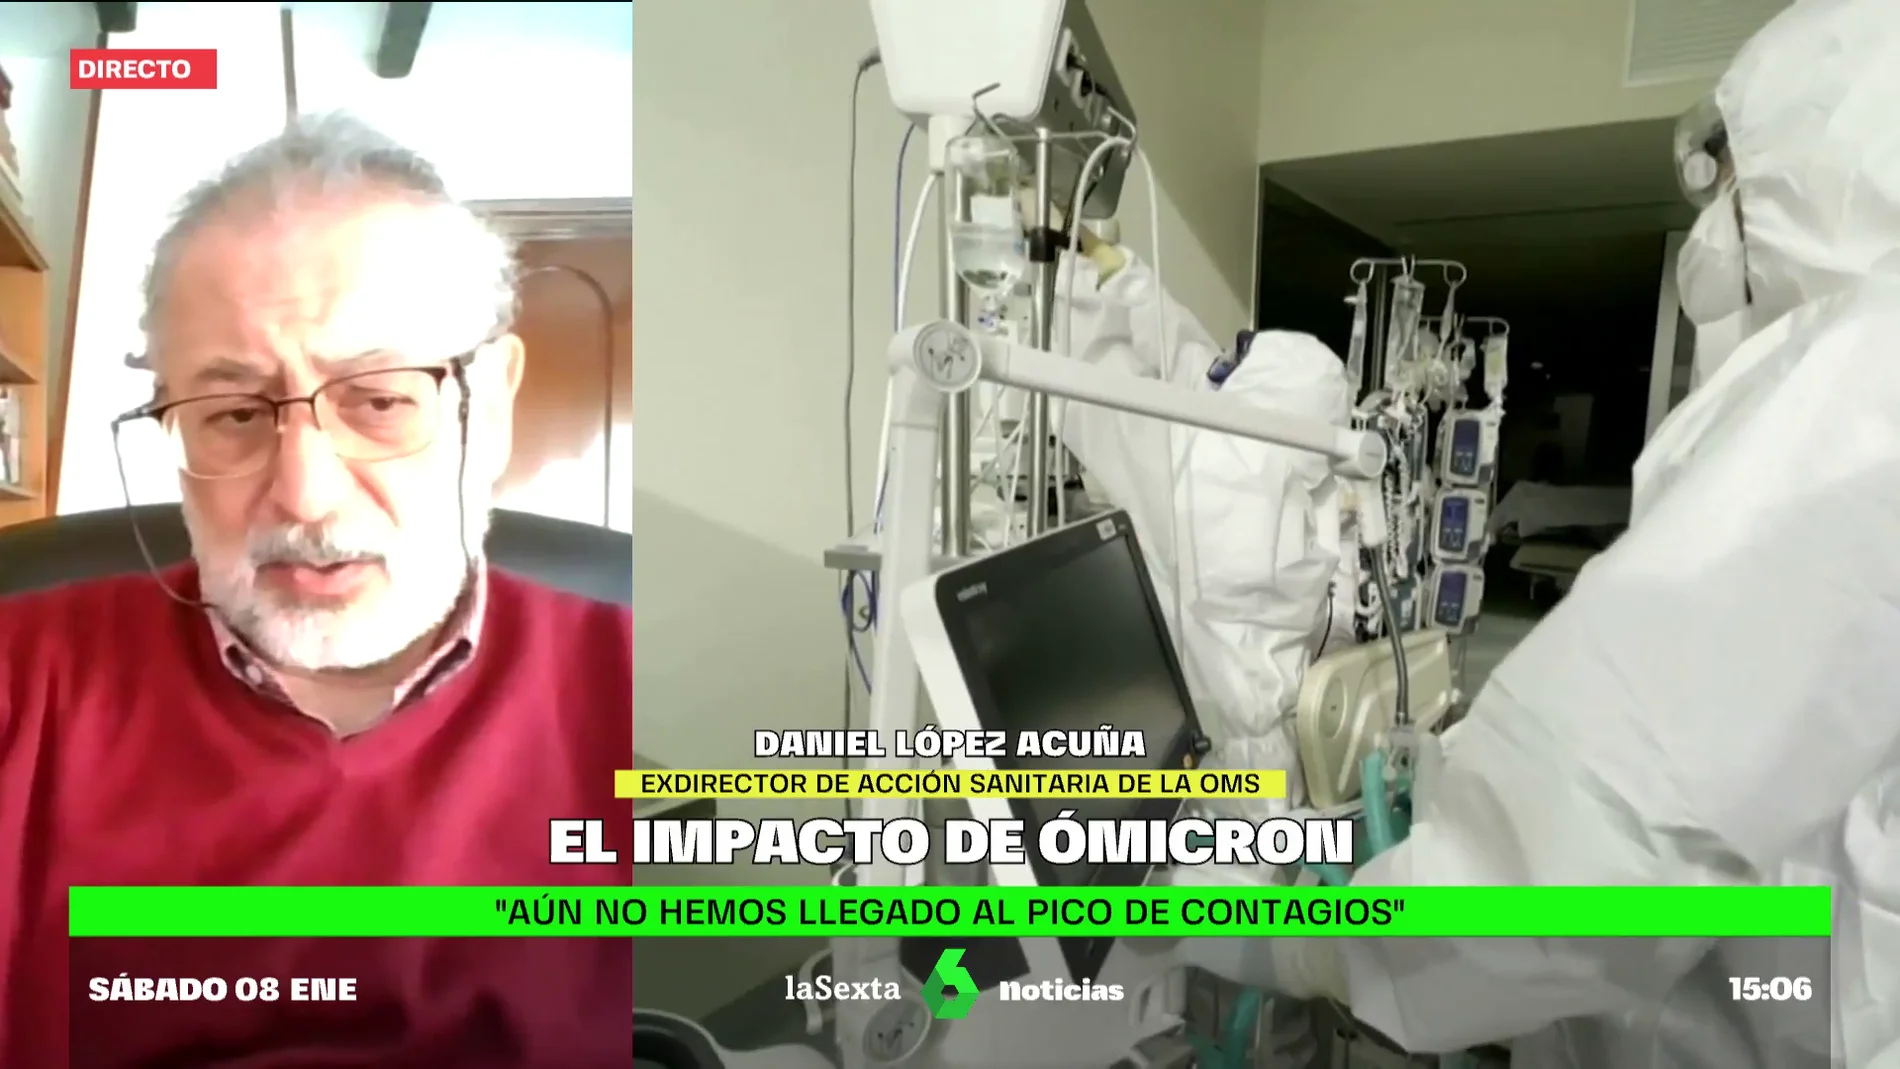 López Acuña, tajante sobre ómicron: "No estamos ante una gripalización ni ante el fin de la pandemia"